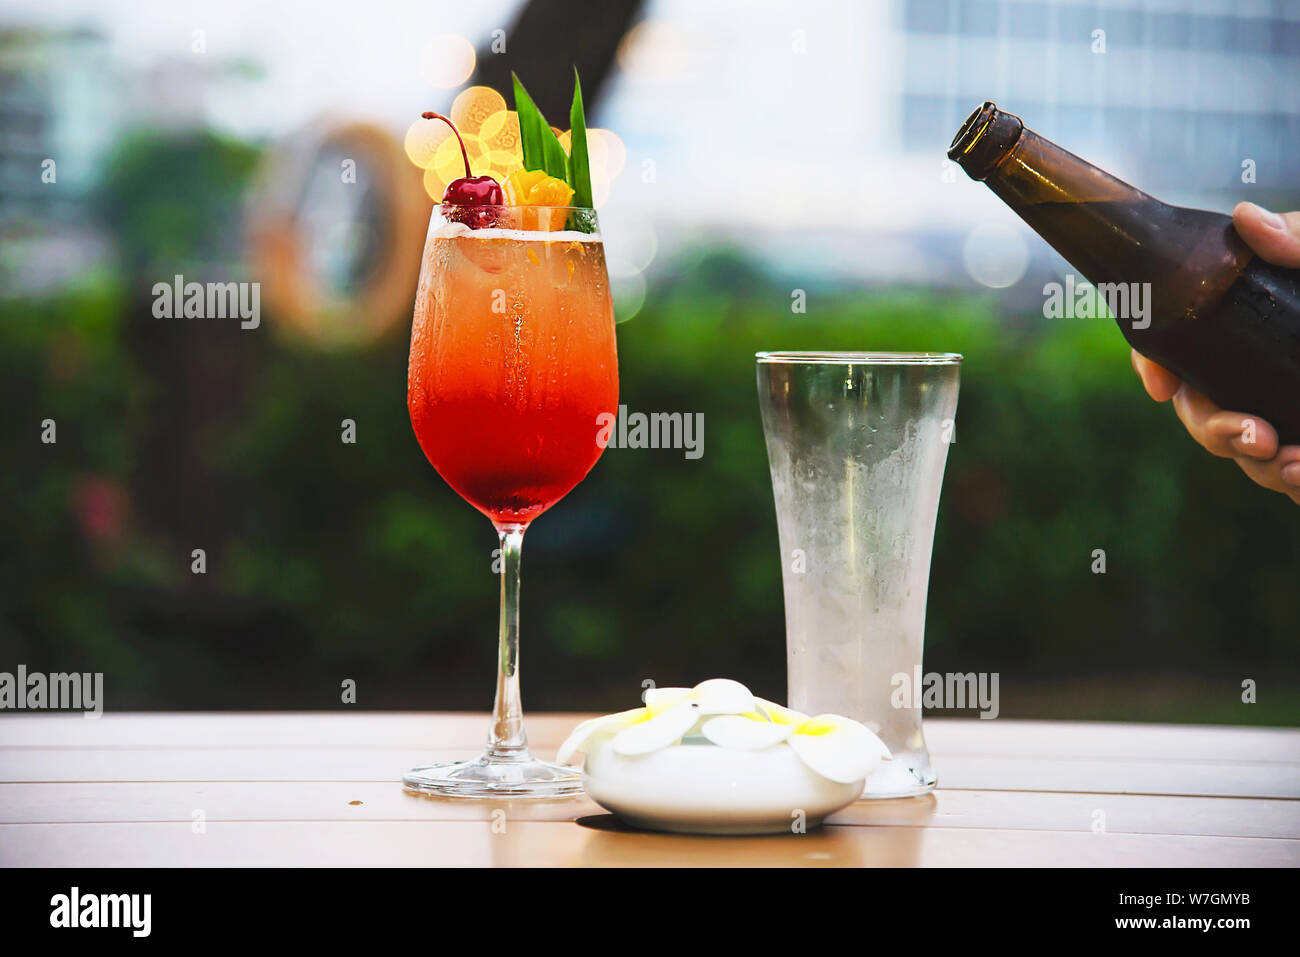 Les gens célébration en restaurant avec café et ou mai tai mai thai - vie heureuse avec des gens heureux de prendre un verre dans le concept de jardin Banque D'Images